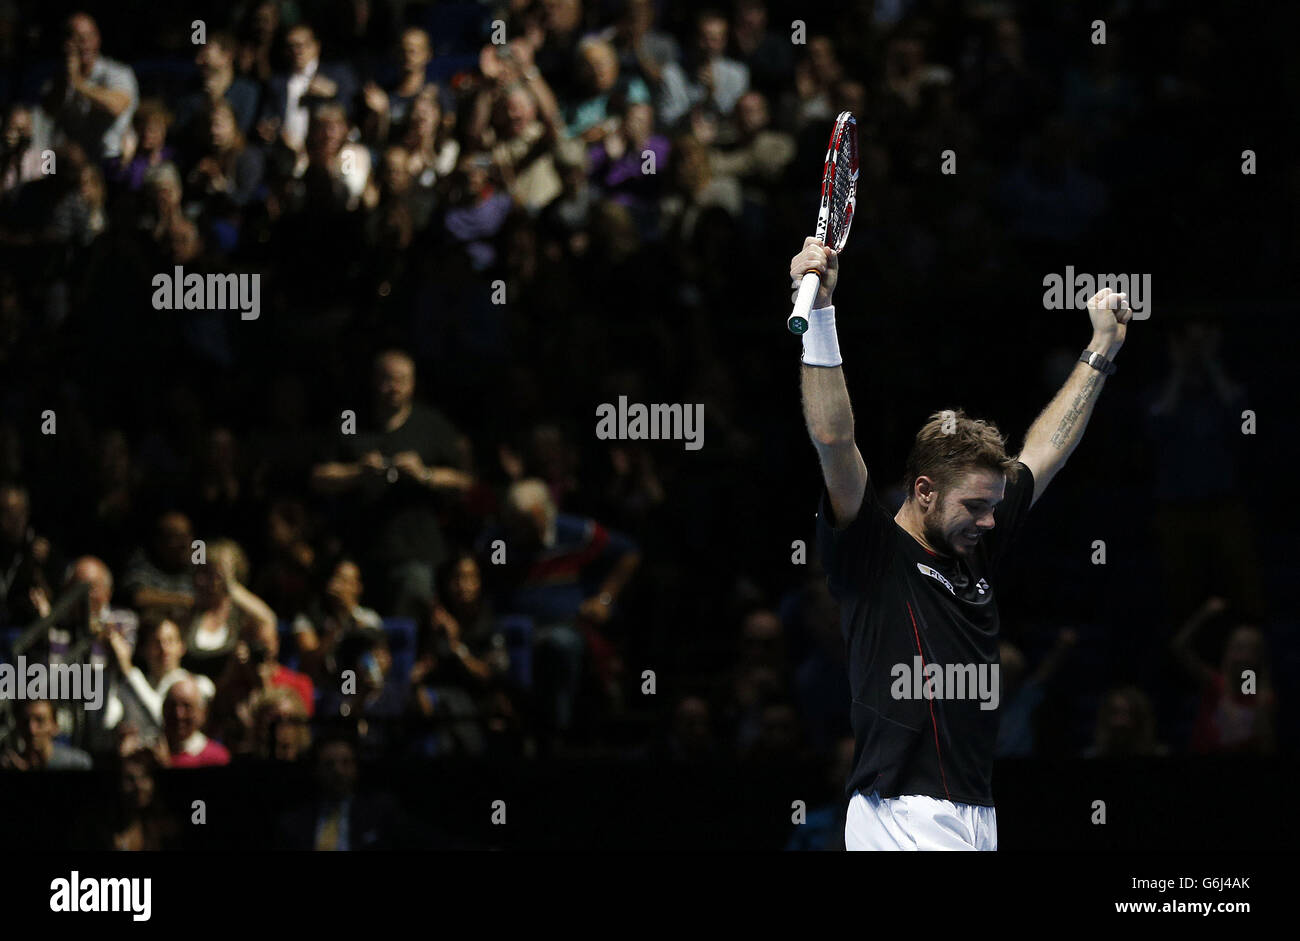 Stanislas Wawrinka célèbre sa victoire contre David Ferrer lors du cinquième jour des finales du Barclays ATP World Tour à l'O2 Arena, Londres. Banque D'Images